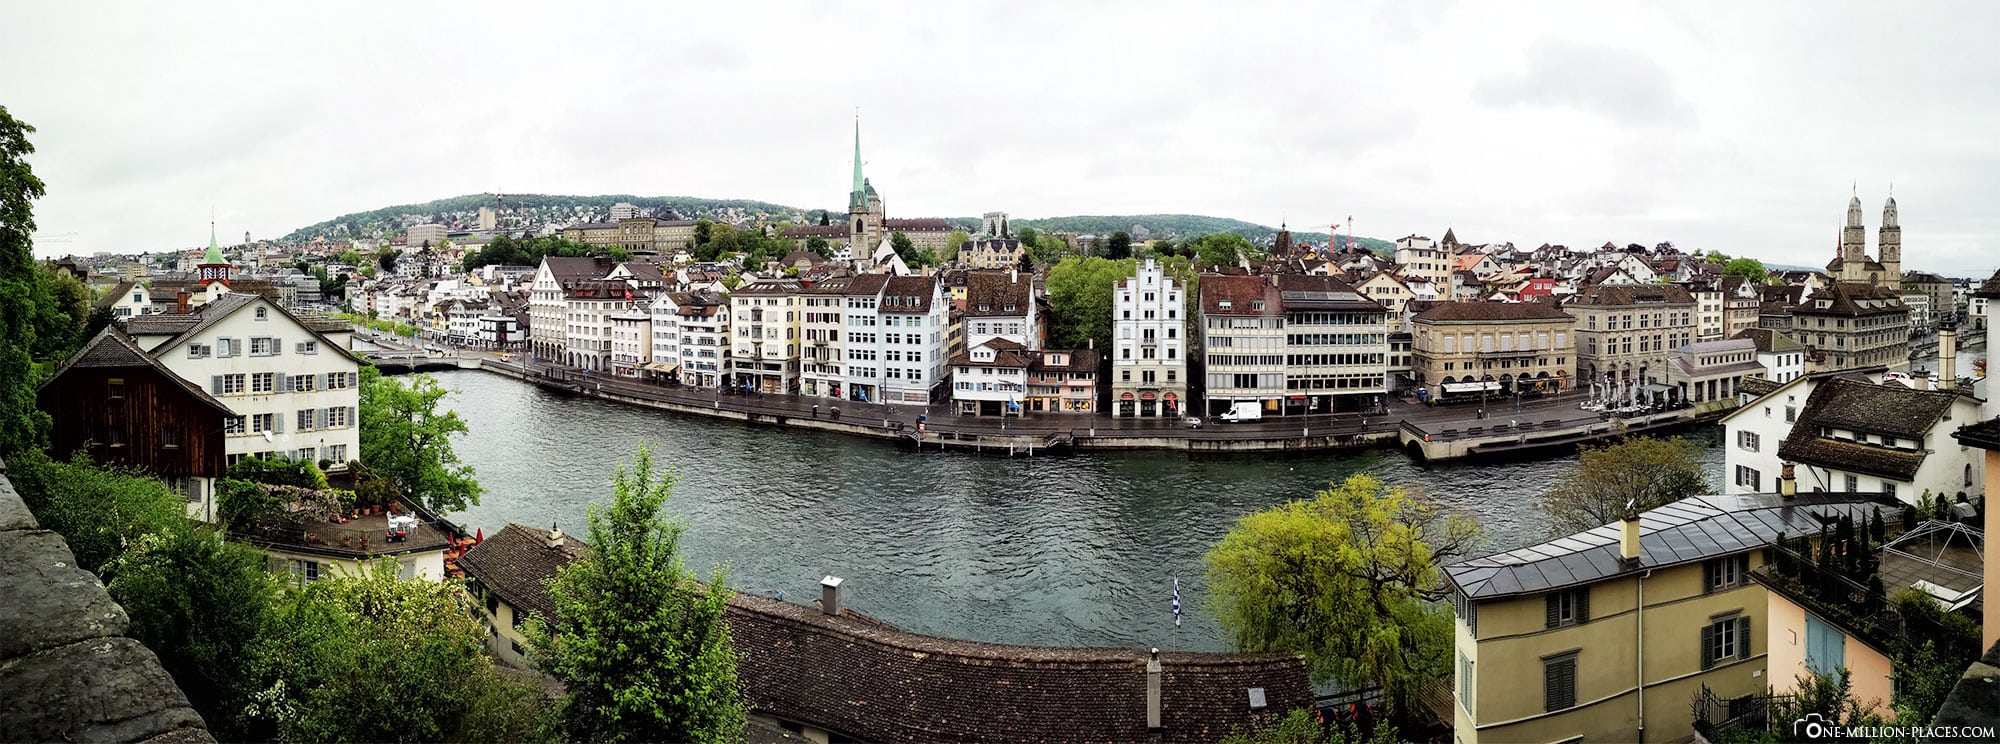 Panorama, Lindenhof, Aussicht, Zürich, Altstadt, Sehenswürdigkeiten, Fotospots, Schweiz, Reiseblog